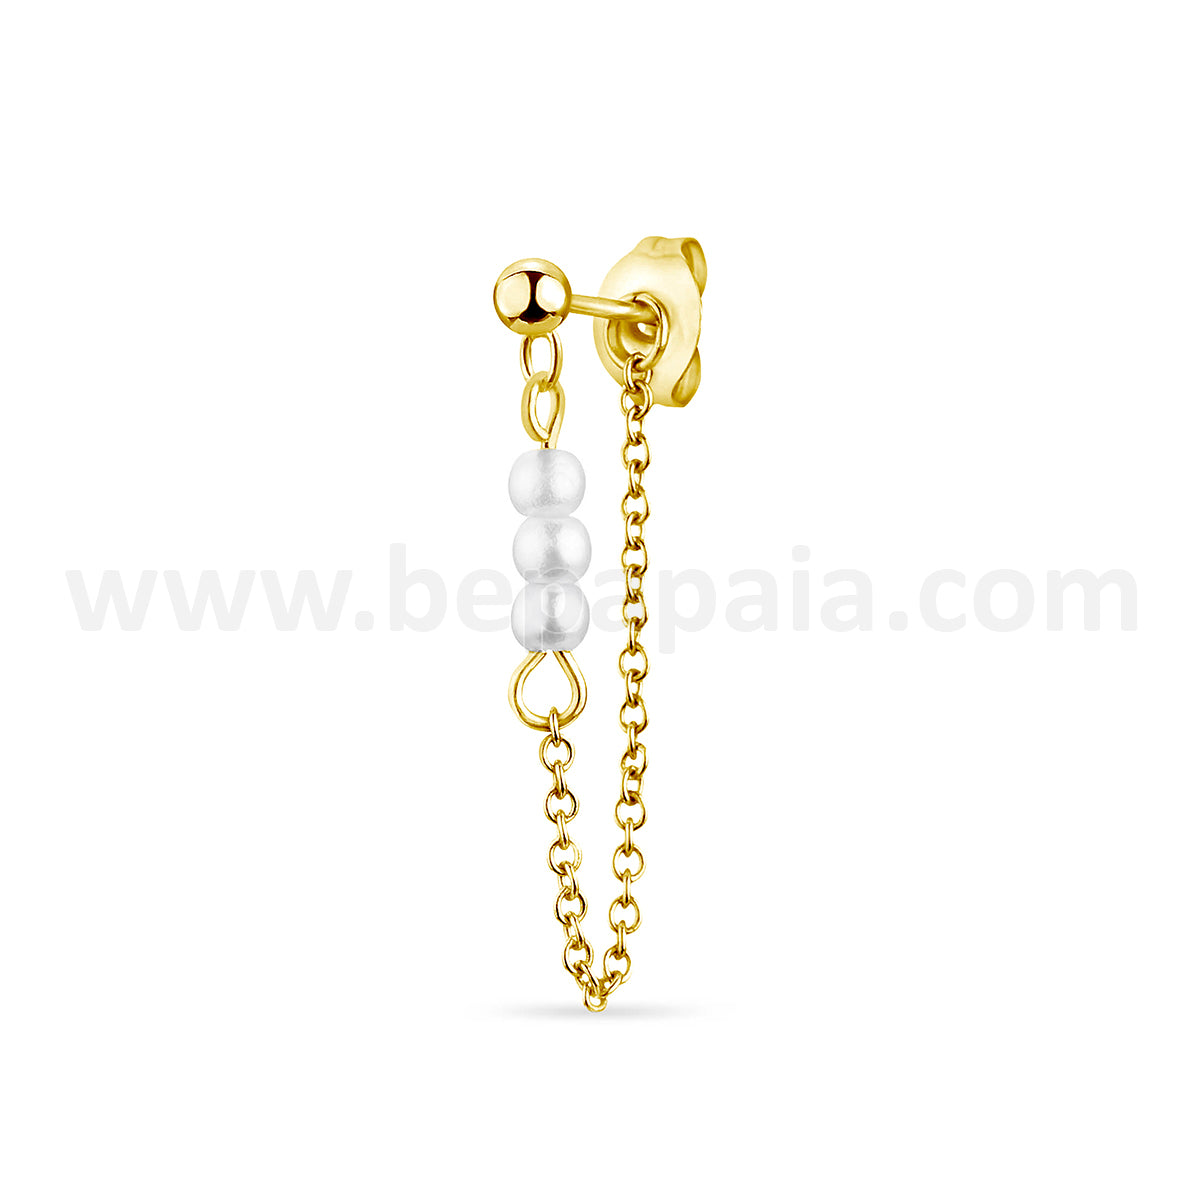 Créole dorée avec des perles de designs assortis